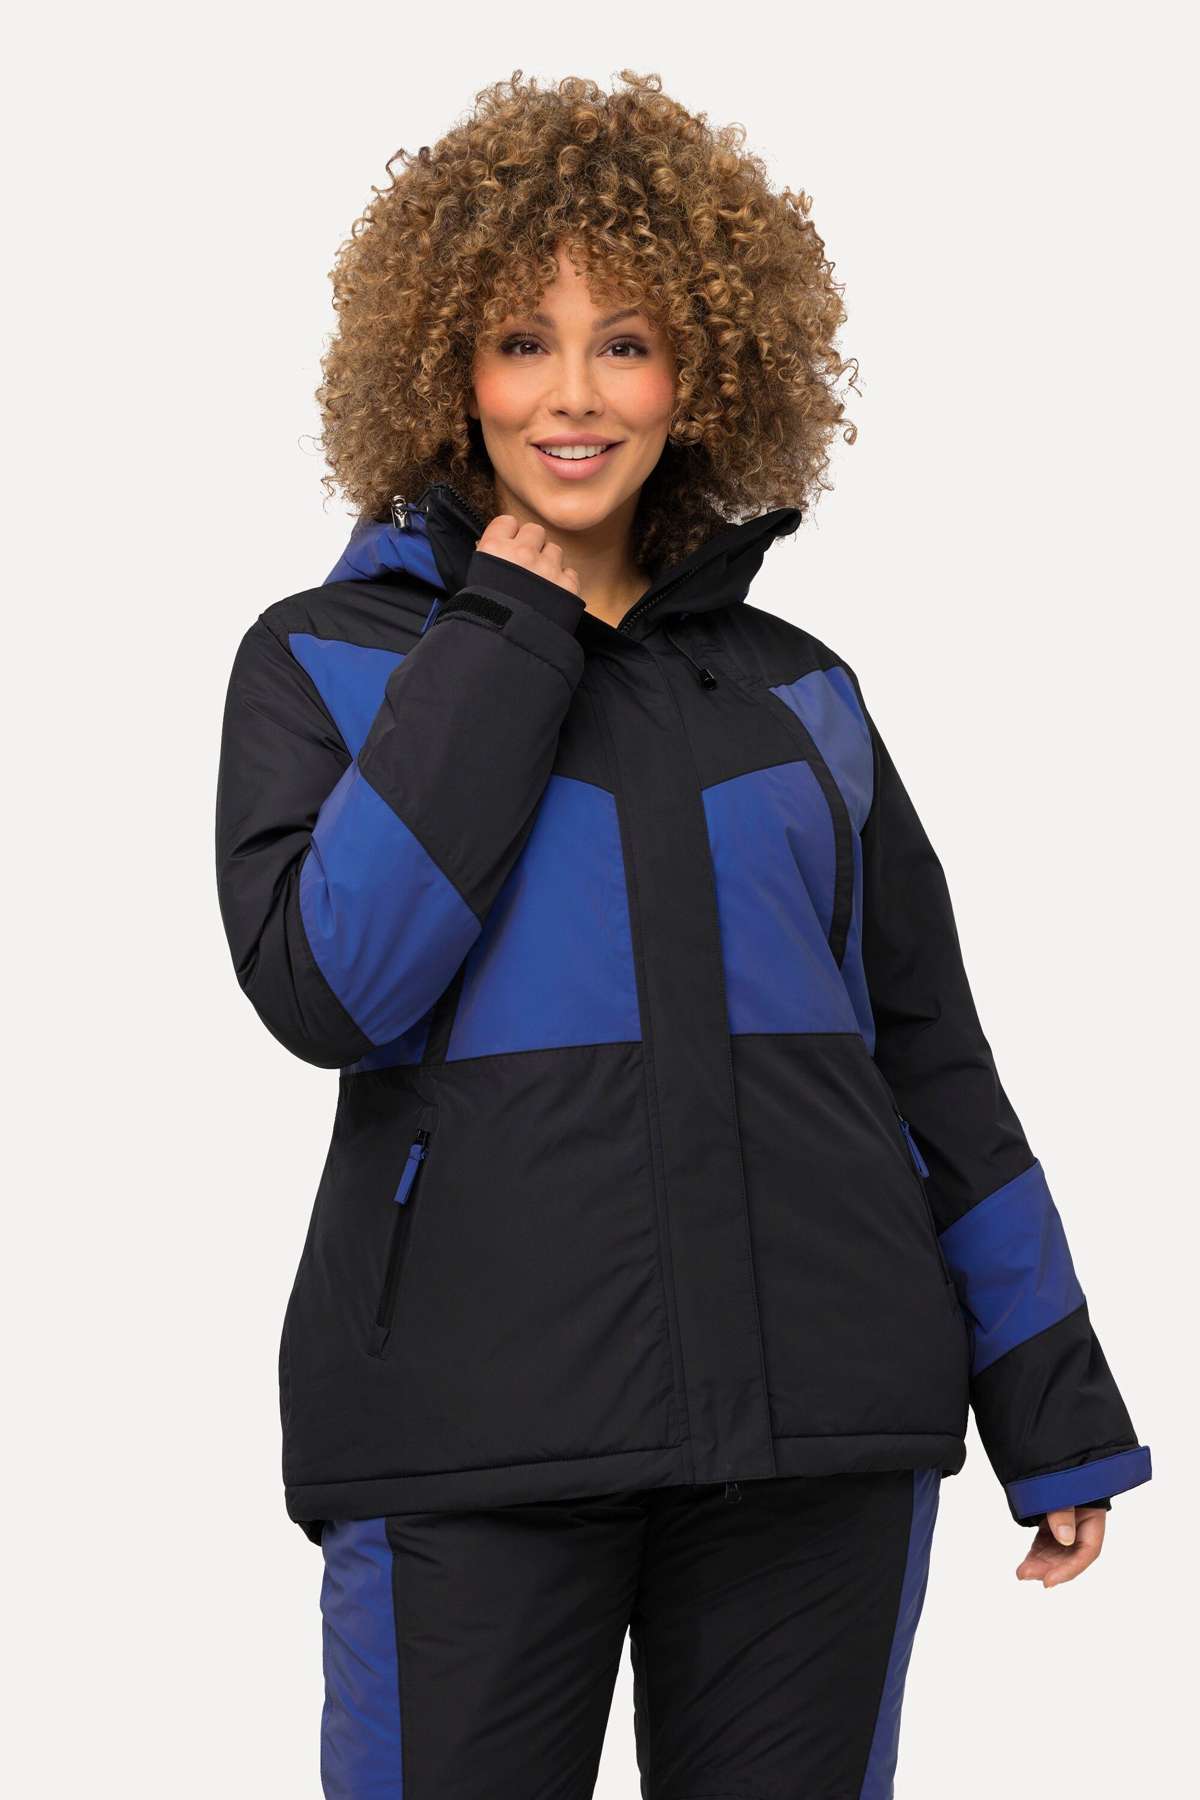 Функциональная куртка HYPRAR функциональная куртка с капюшоном водонепроницаемая лыжная куртка